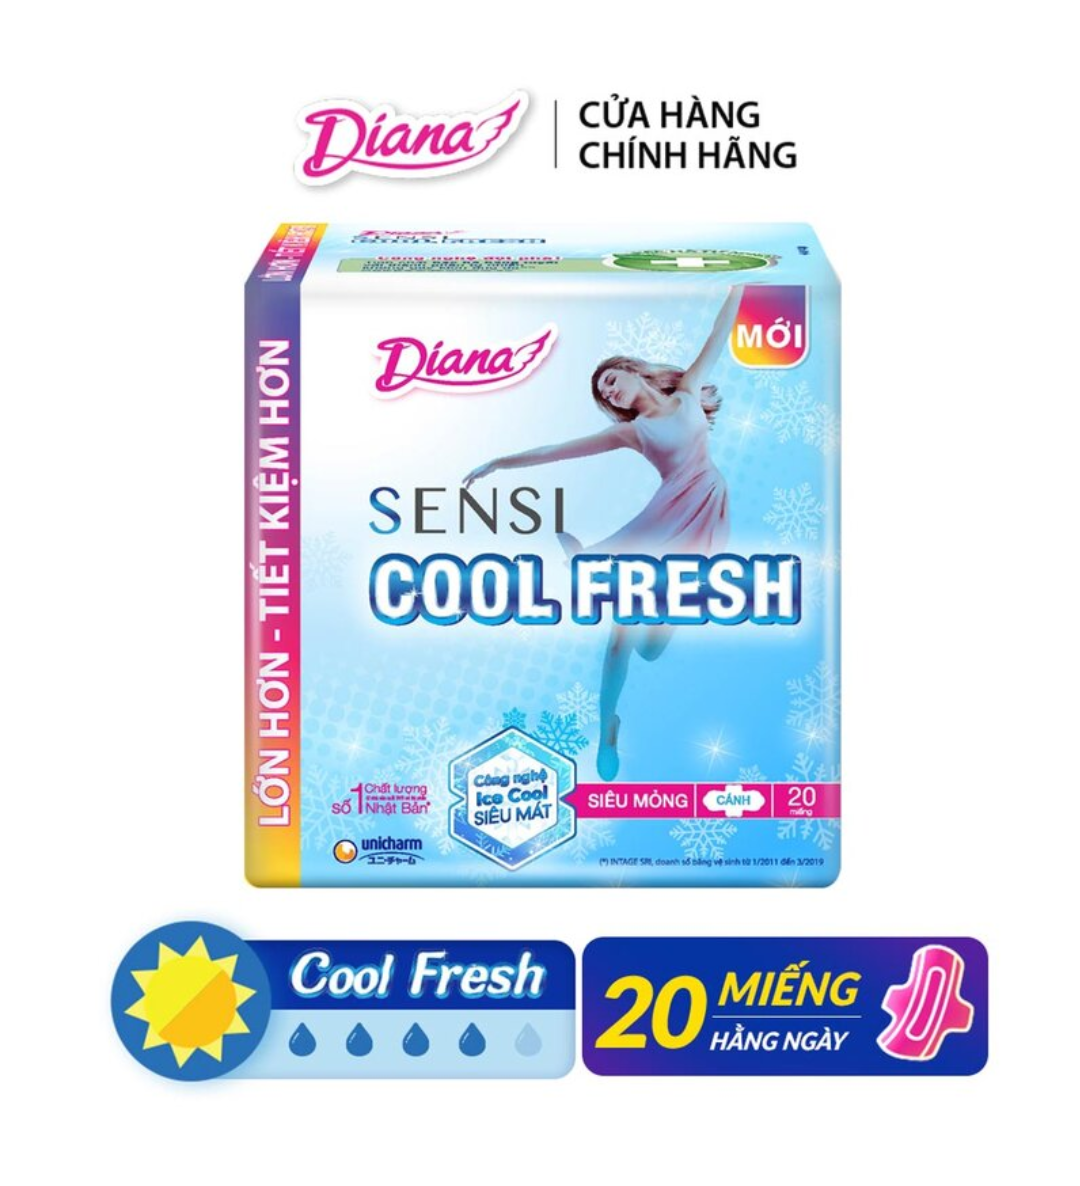 Băng vệ sinh Diana Sensi Cool Fresh khô thoáng siêu mỏng cánh gói 20M mua